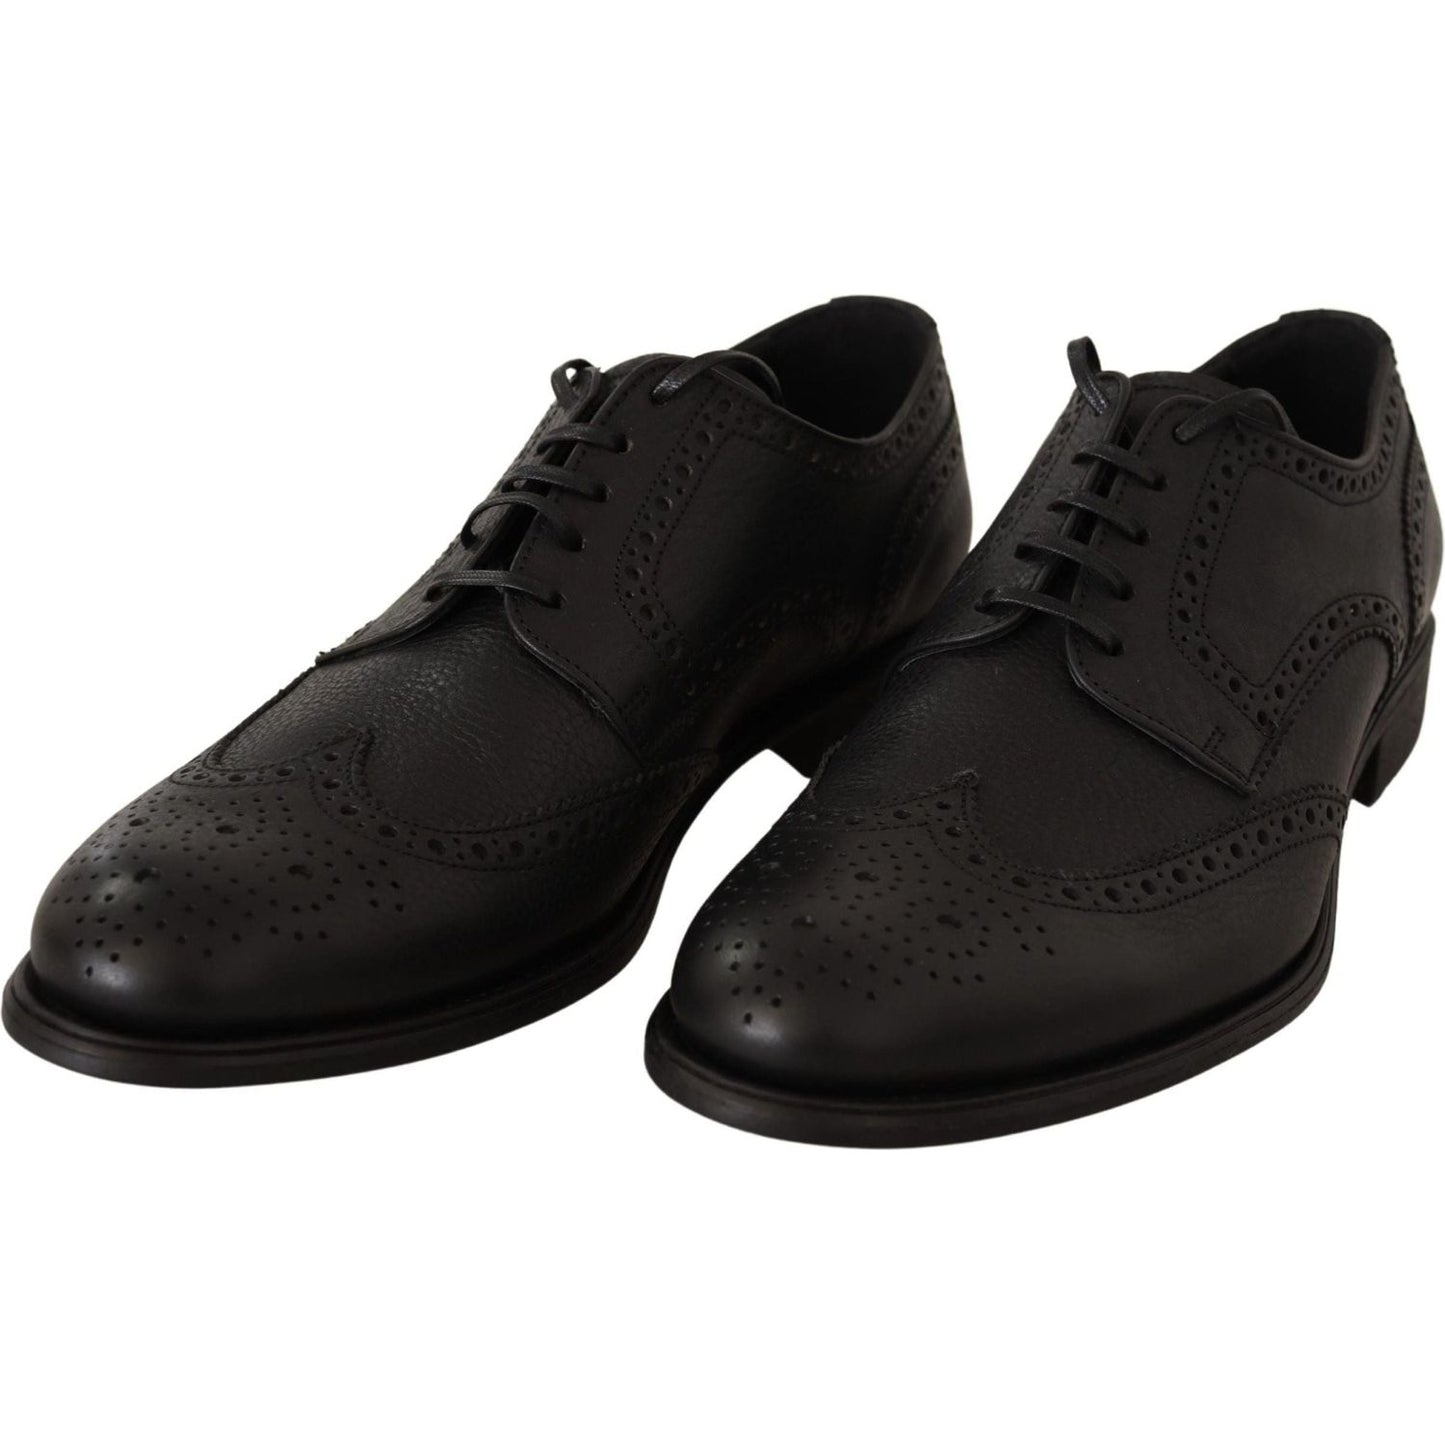 Dolce & Gabbana | Black Leather Oxford Wingtip Formal Dress Shoes | 389.00 - McRichard Designer Brands